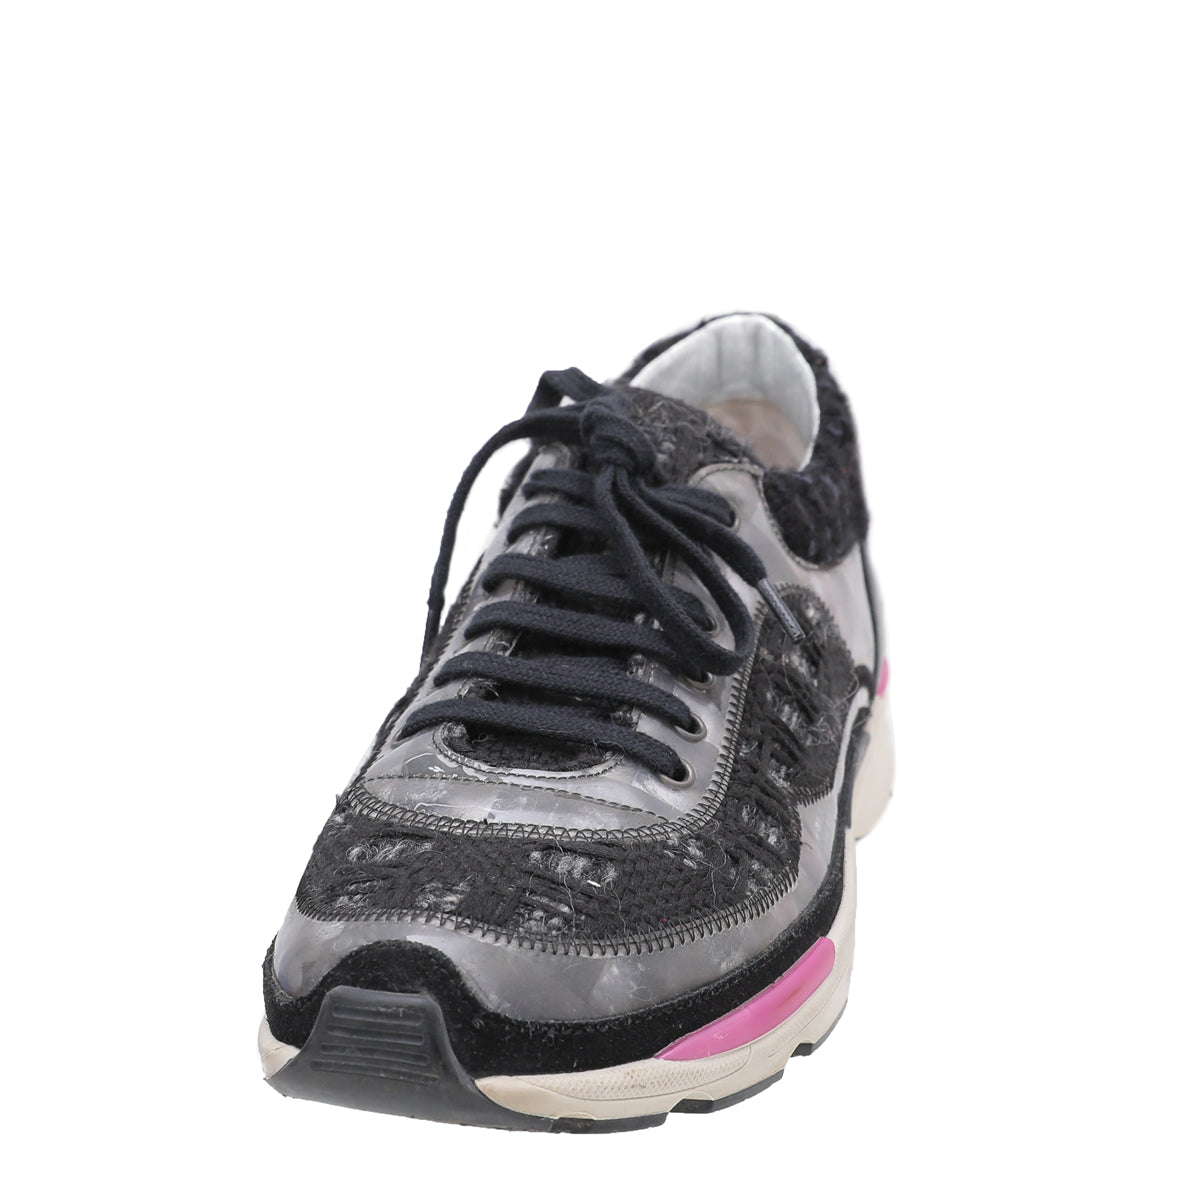 Chanel Black Tweed Runway Sneakers 37 – The Closet